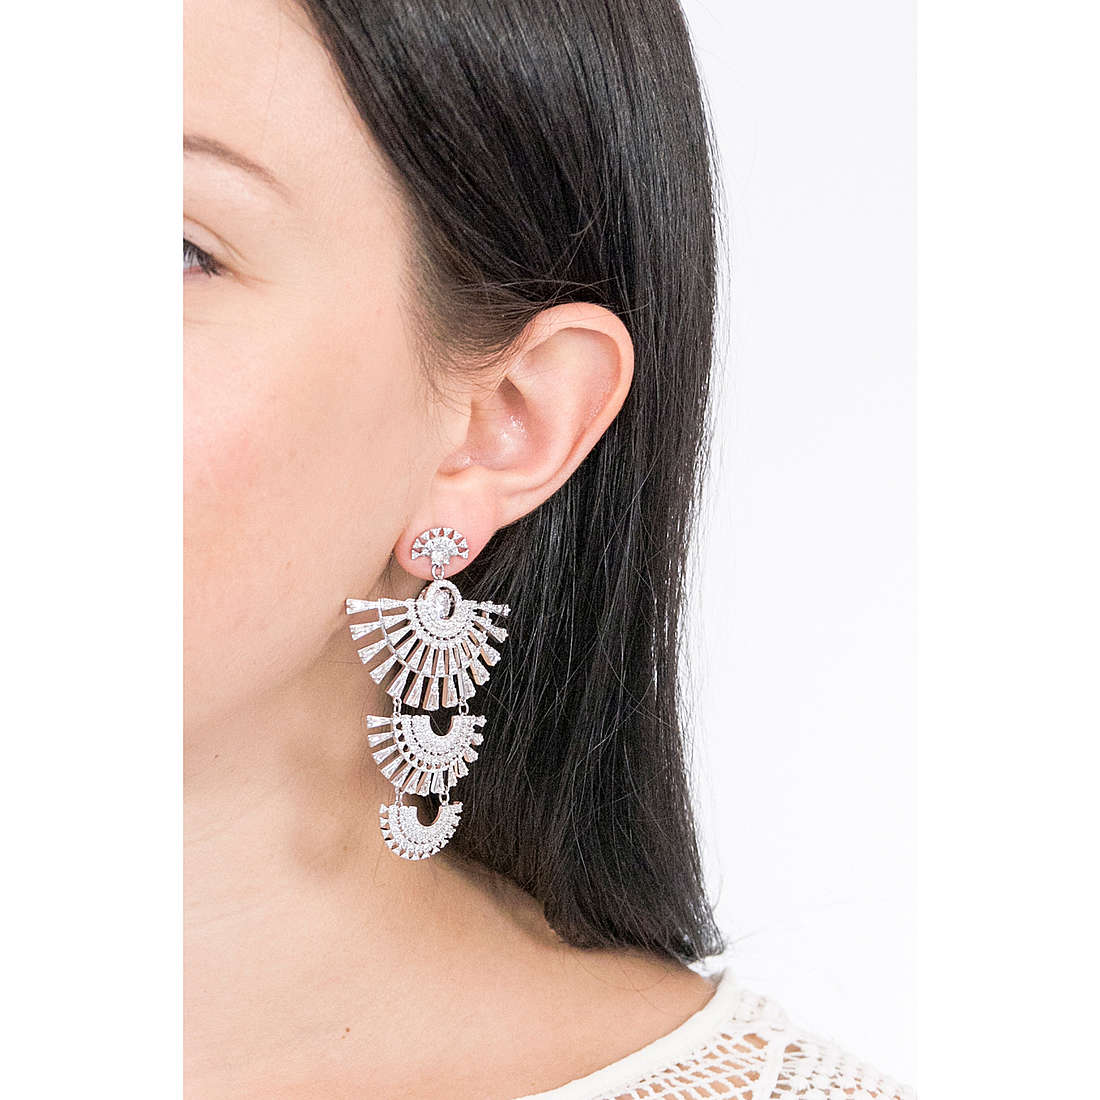 Swarovski earrings Sparkling woman 5568008 wearing